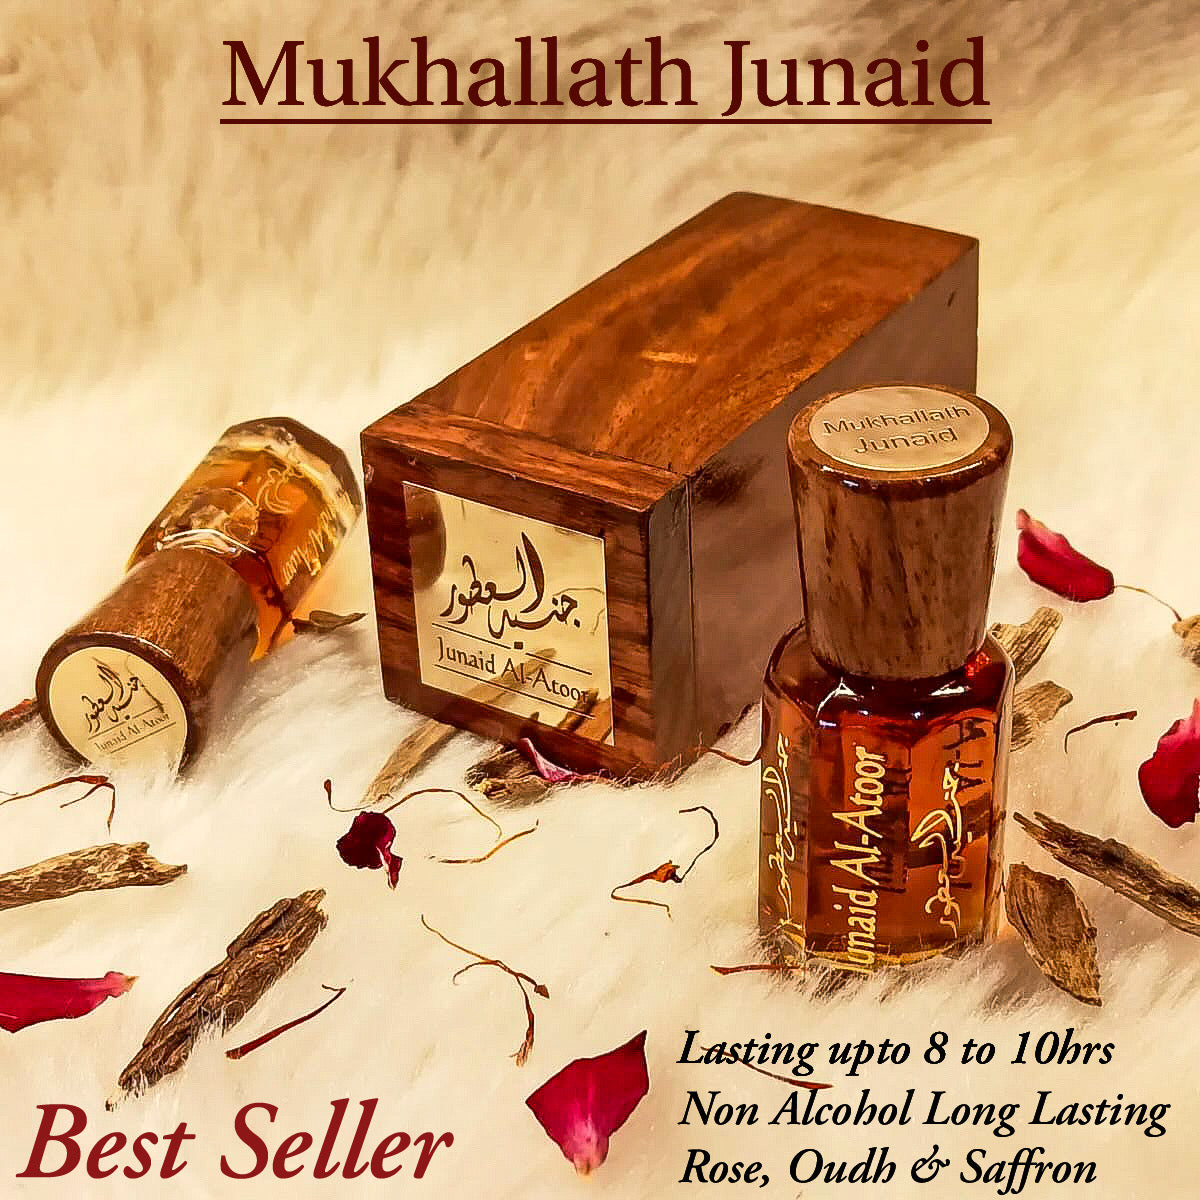 Mukhallath Junaid Attar